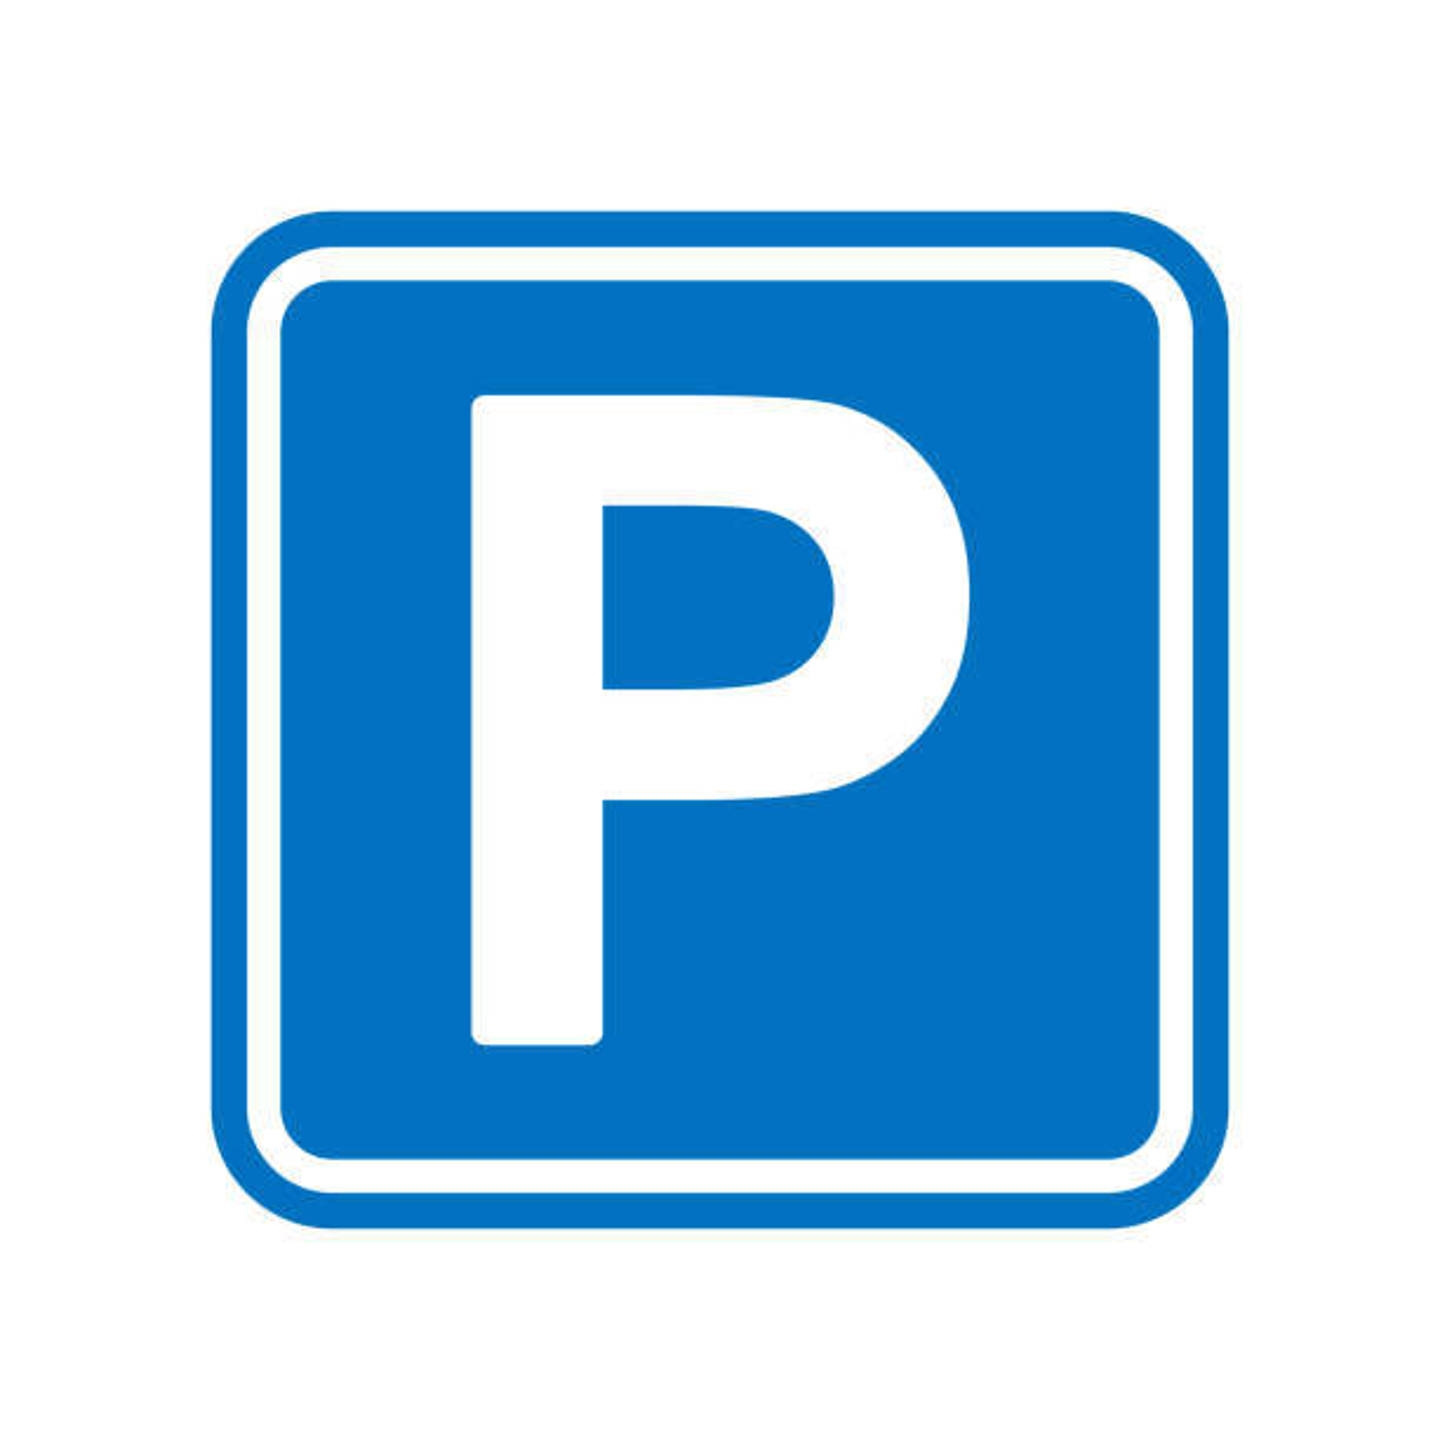 Parking / garage à vendre à Molenbeek-Saint-Jean 1080 77250.00€  chambres 12.50m² - annonce 41287